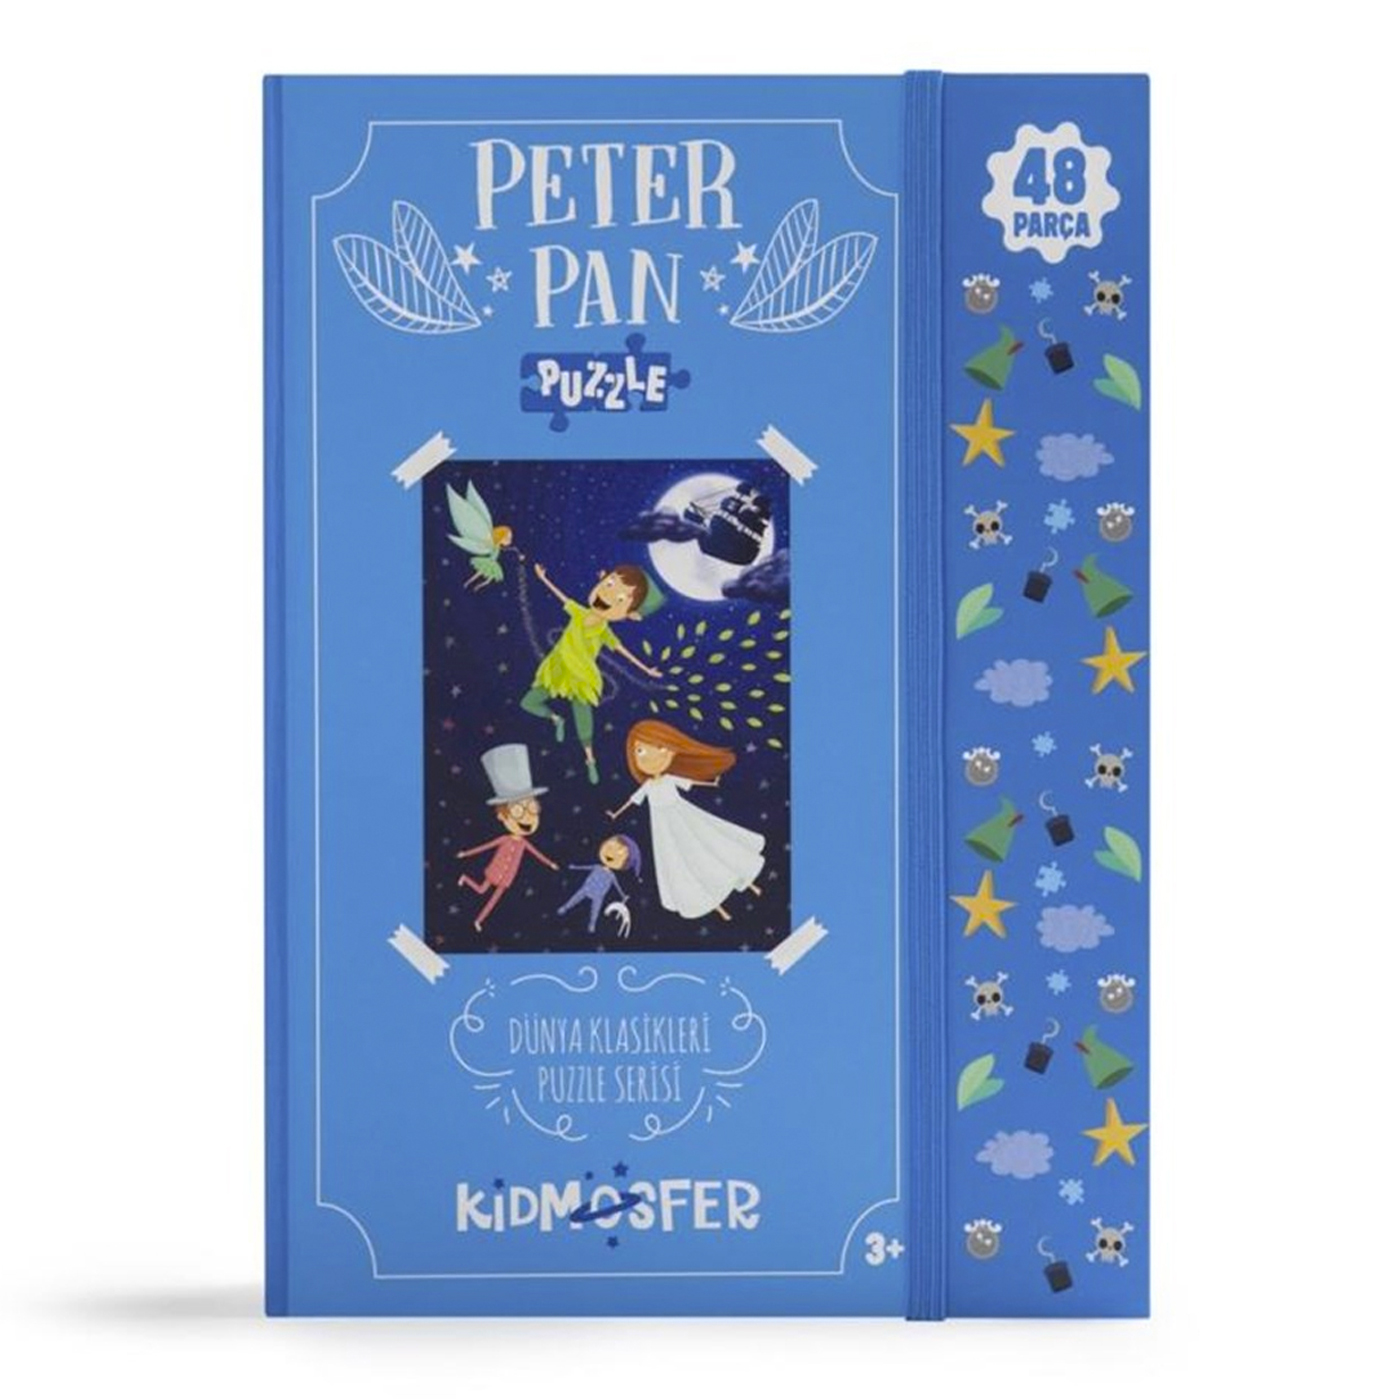  Peter Pan Puzzle 48 Parça